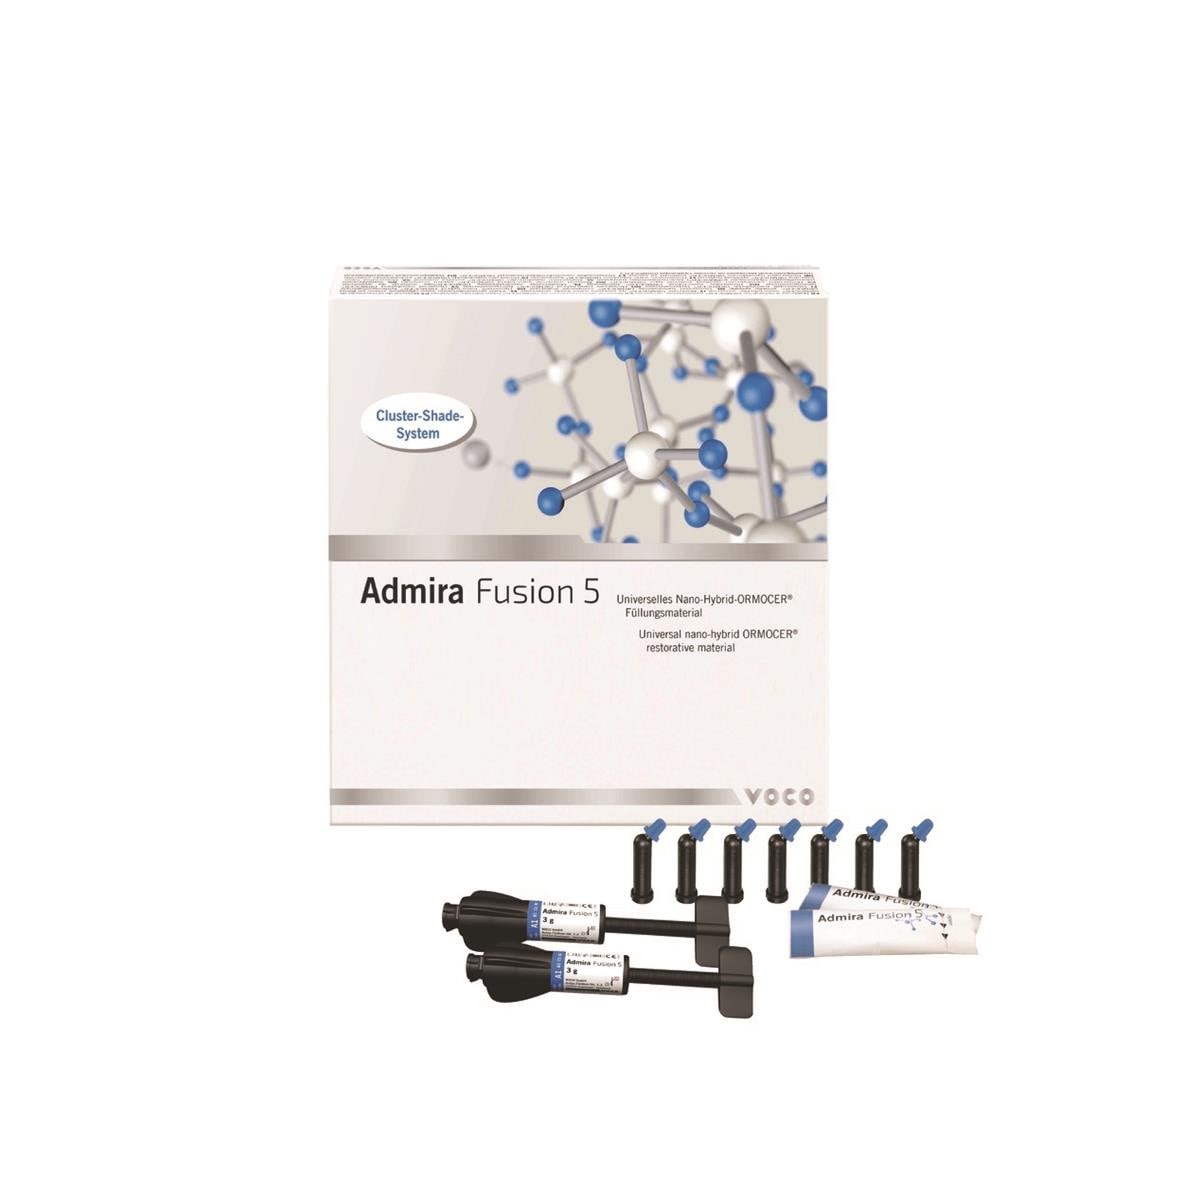 Admira Fusion 5 - Coffret test - 10 x 0,2g - VOCO